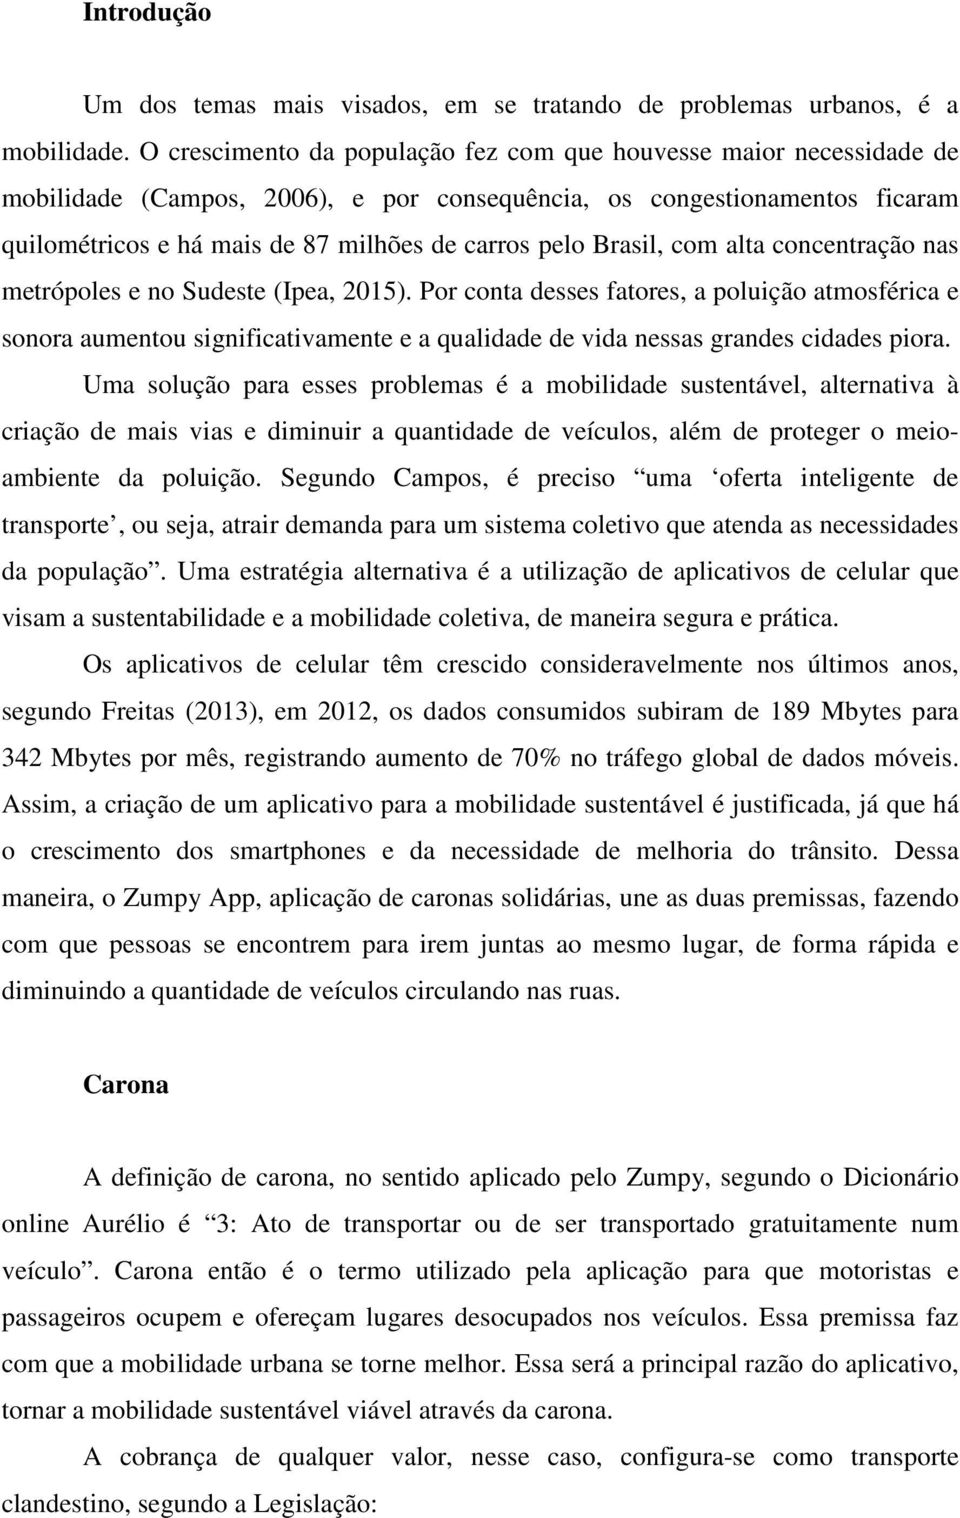 Brasil, com alta concentração nas metrópoles e no Sudeste (Ipea, 2015).